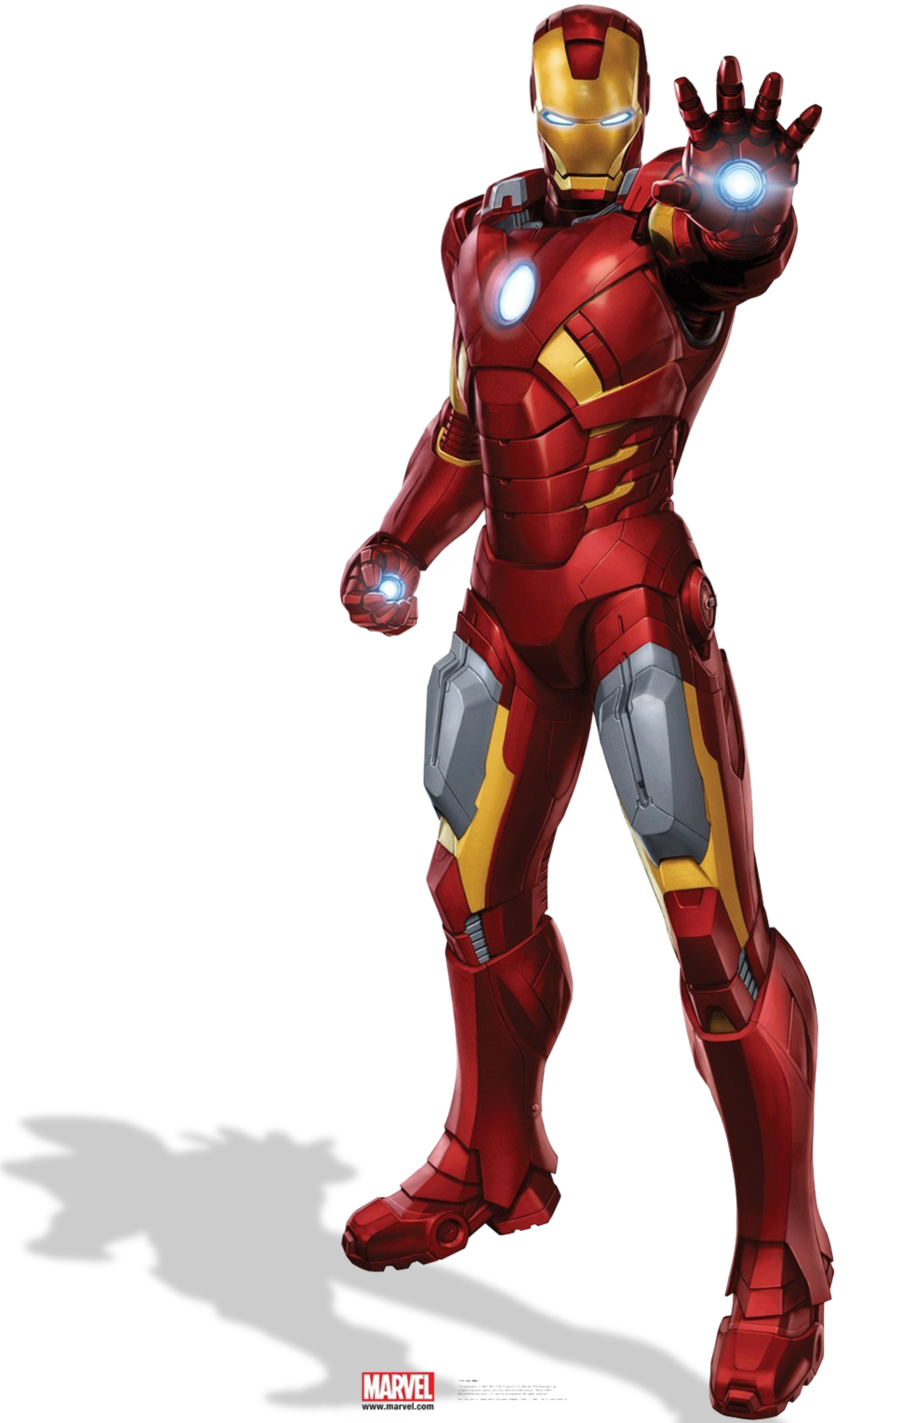 Iron Man Transparent Images